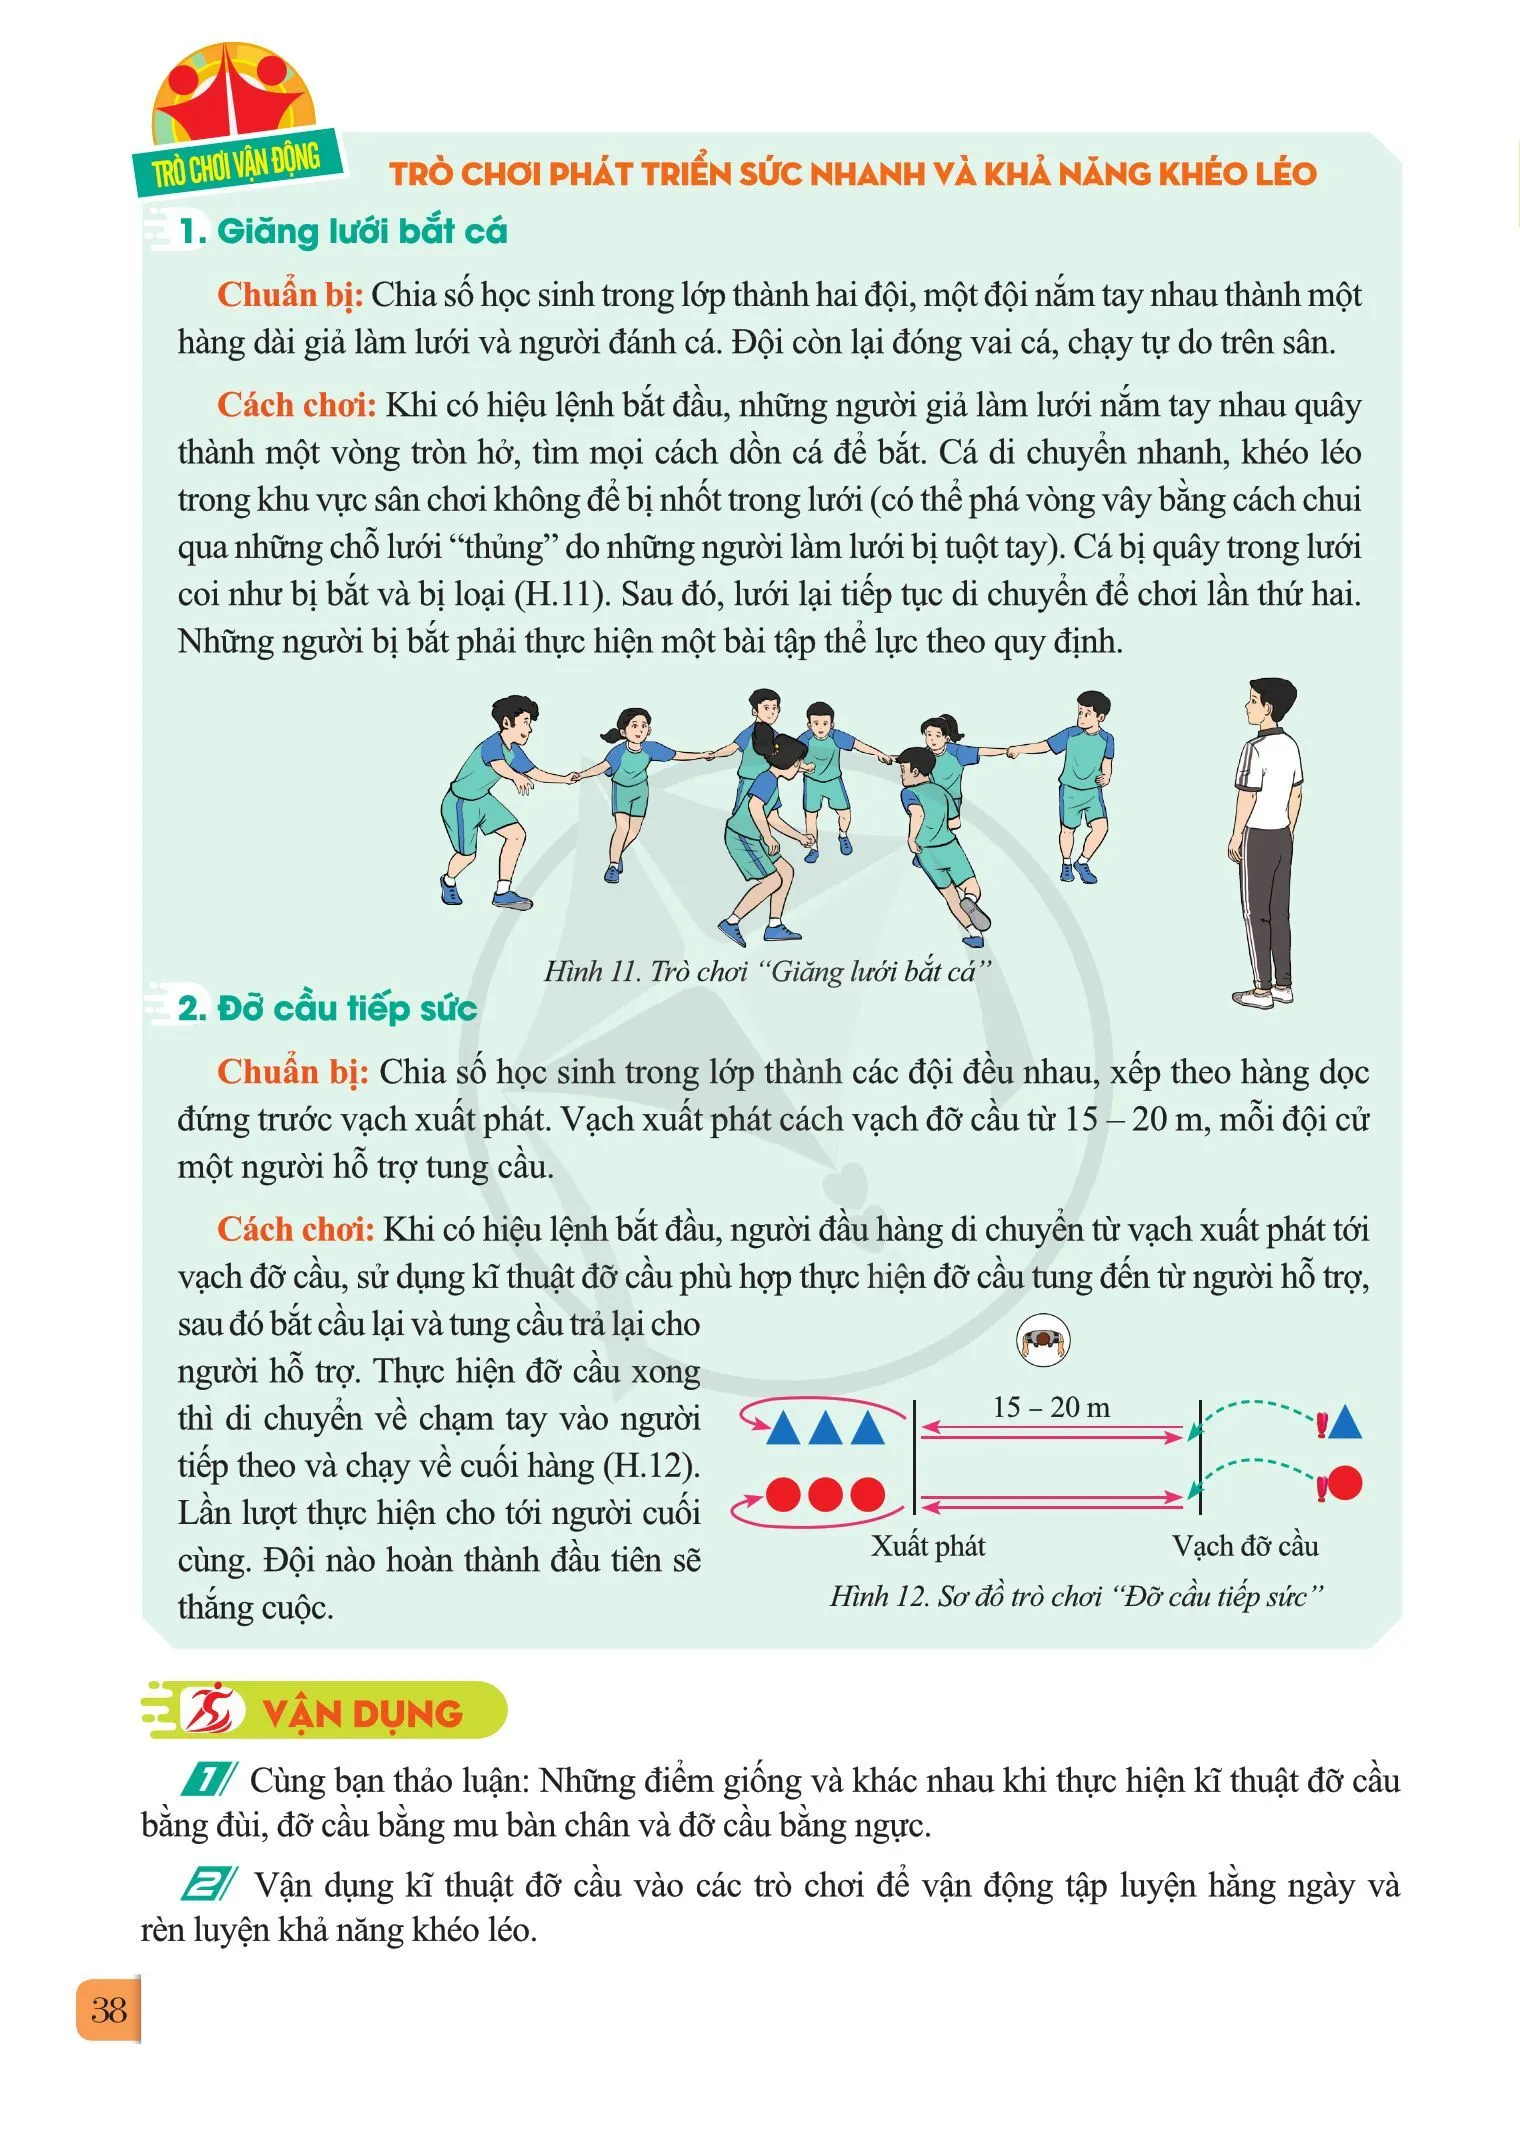 Bài 2. Kĩ thuật đỡ cầu bằng đùi, đỡ cầu bằng mu bàn chân và đỡ cầu bằng ngực